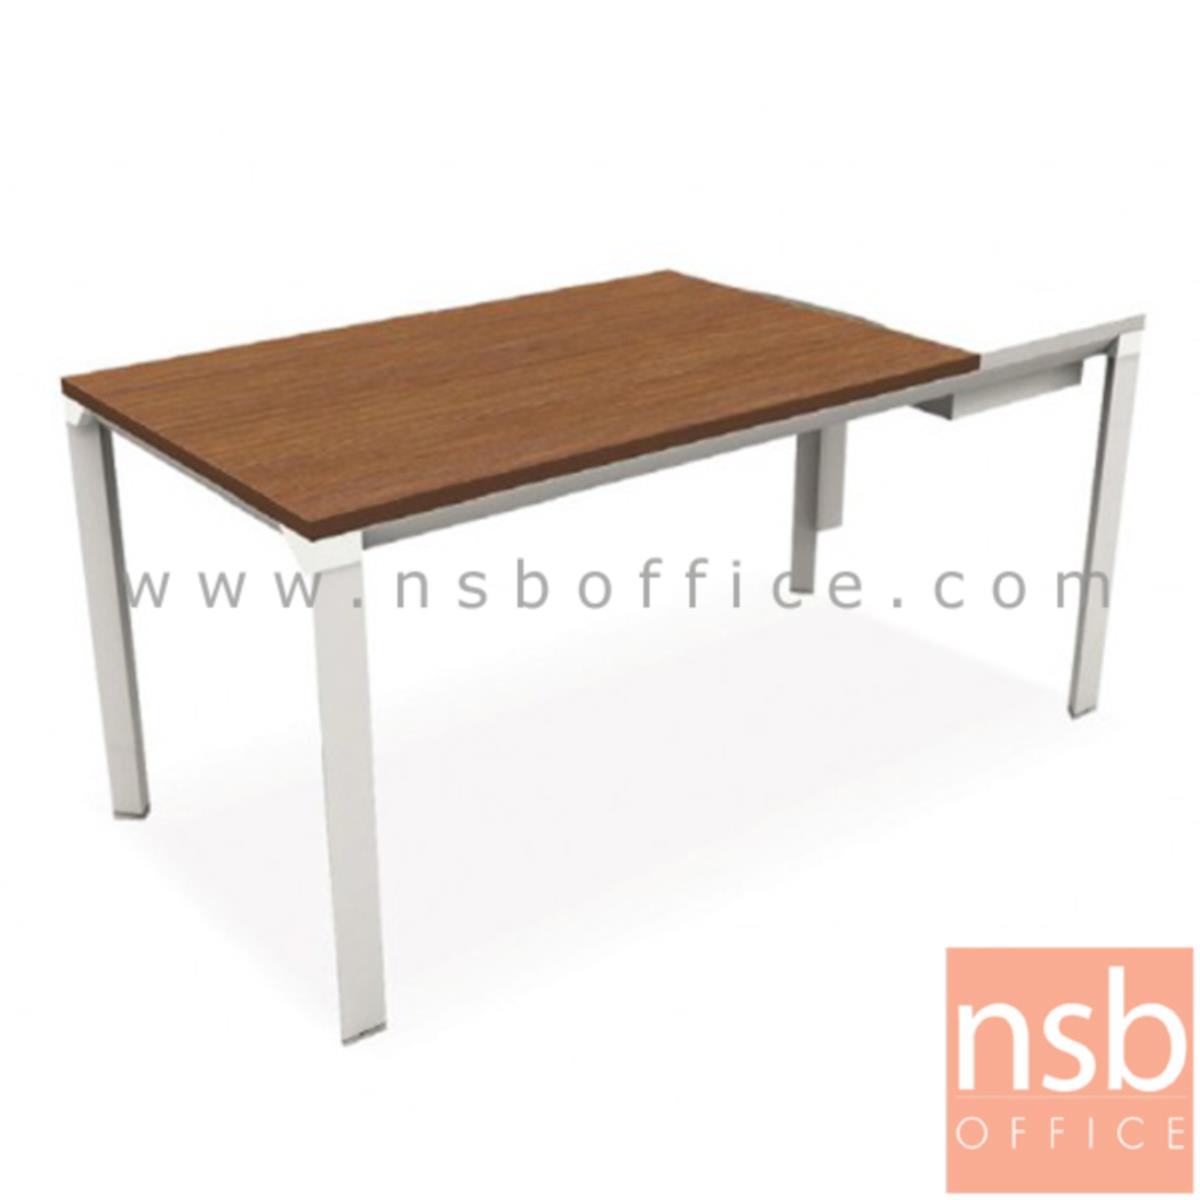 โต๊ะผู้บริหารทรงสี่เหลี่ยมทูโทน รุ่น HB-DK02-1680  ขนาด 160W cm.  ขาเหล็กสีขาว